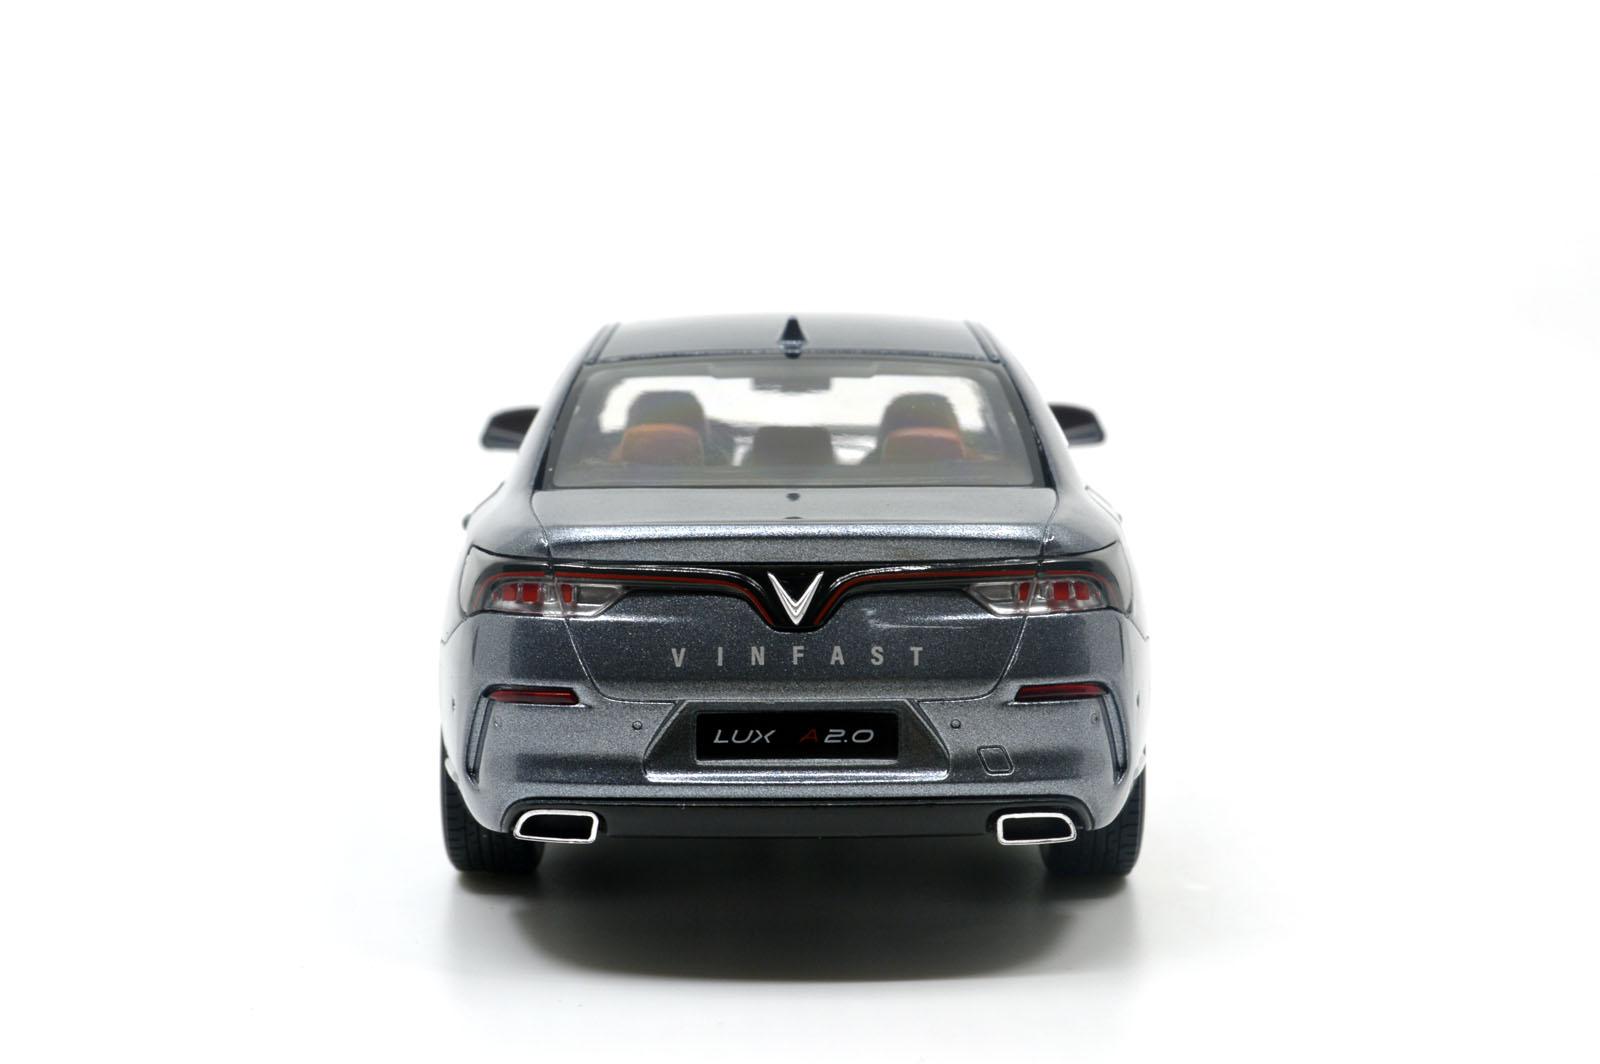 Mô hình xe VinFast Lux chính hãng giá tốt tại PHỤ KIỆN VINFAST